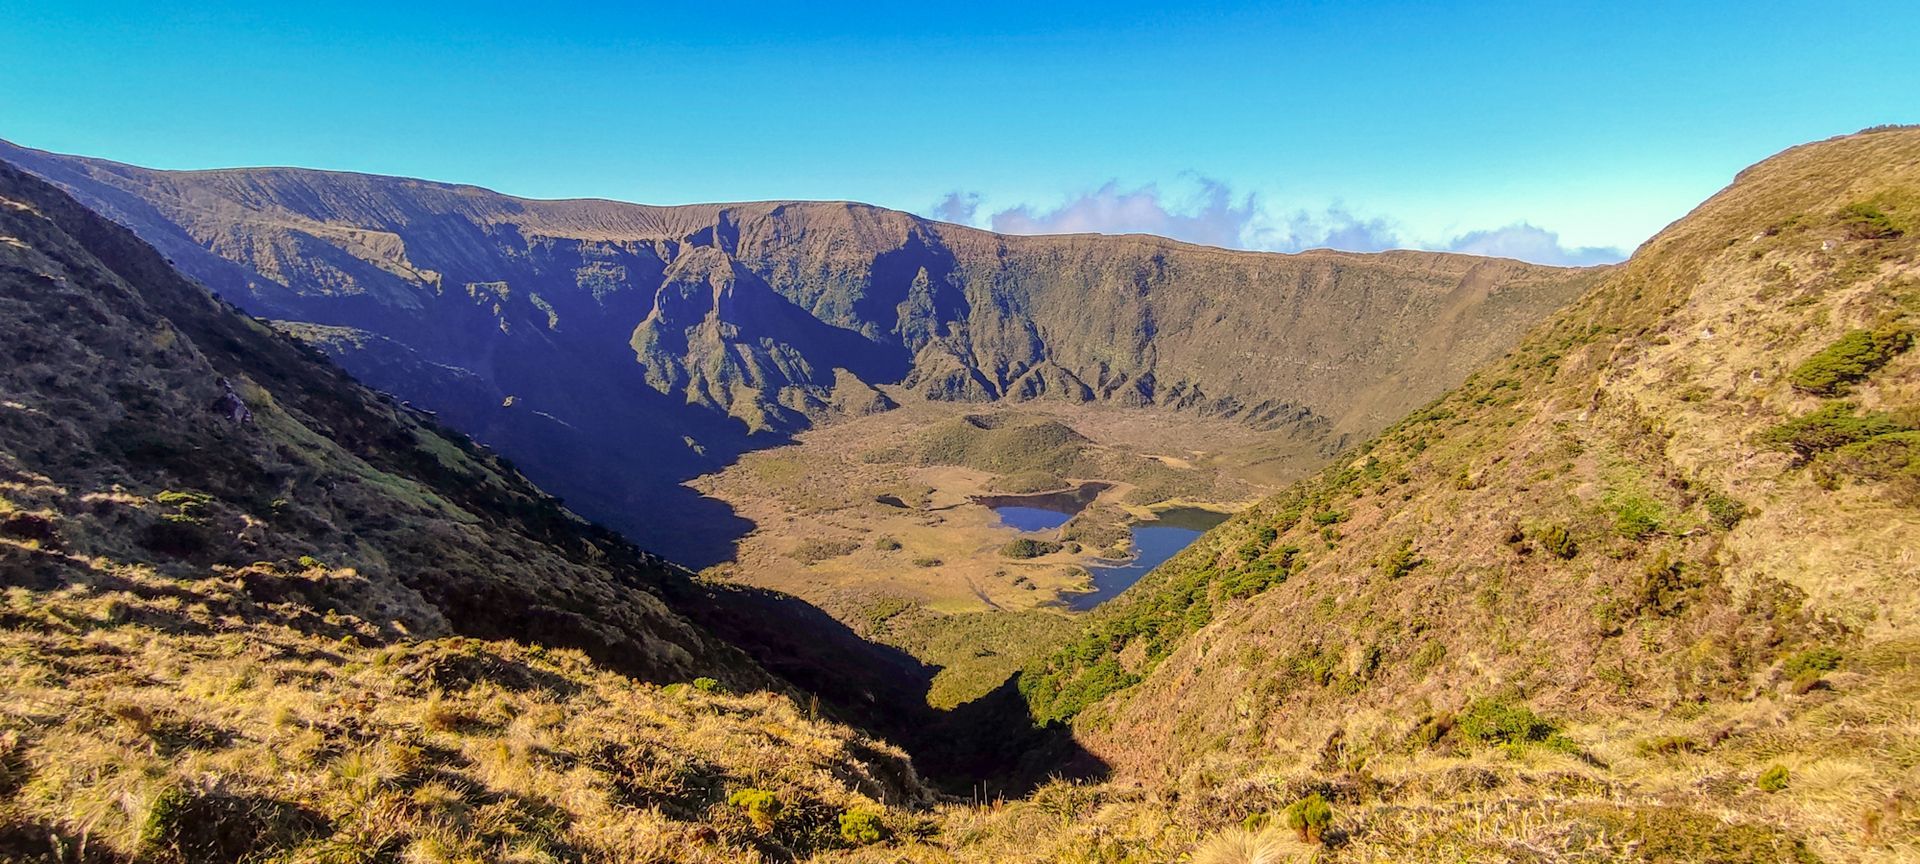 Visita à Caldeira do Faial nas nossas Excursões, Tours e Visitas Guiadas de meio dia na ilha do Faial Açores.